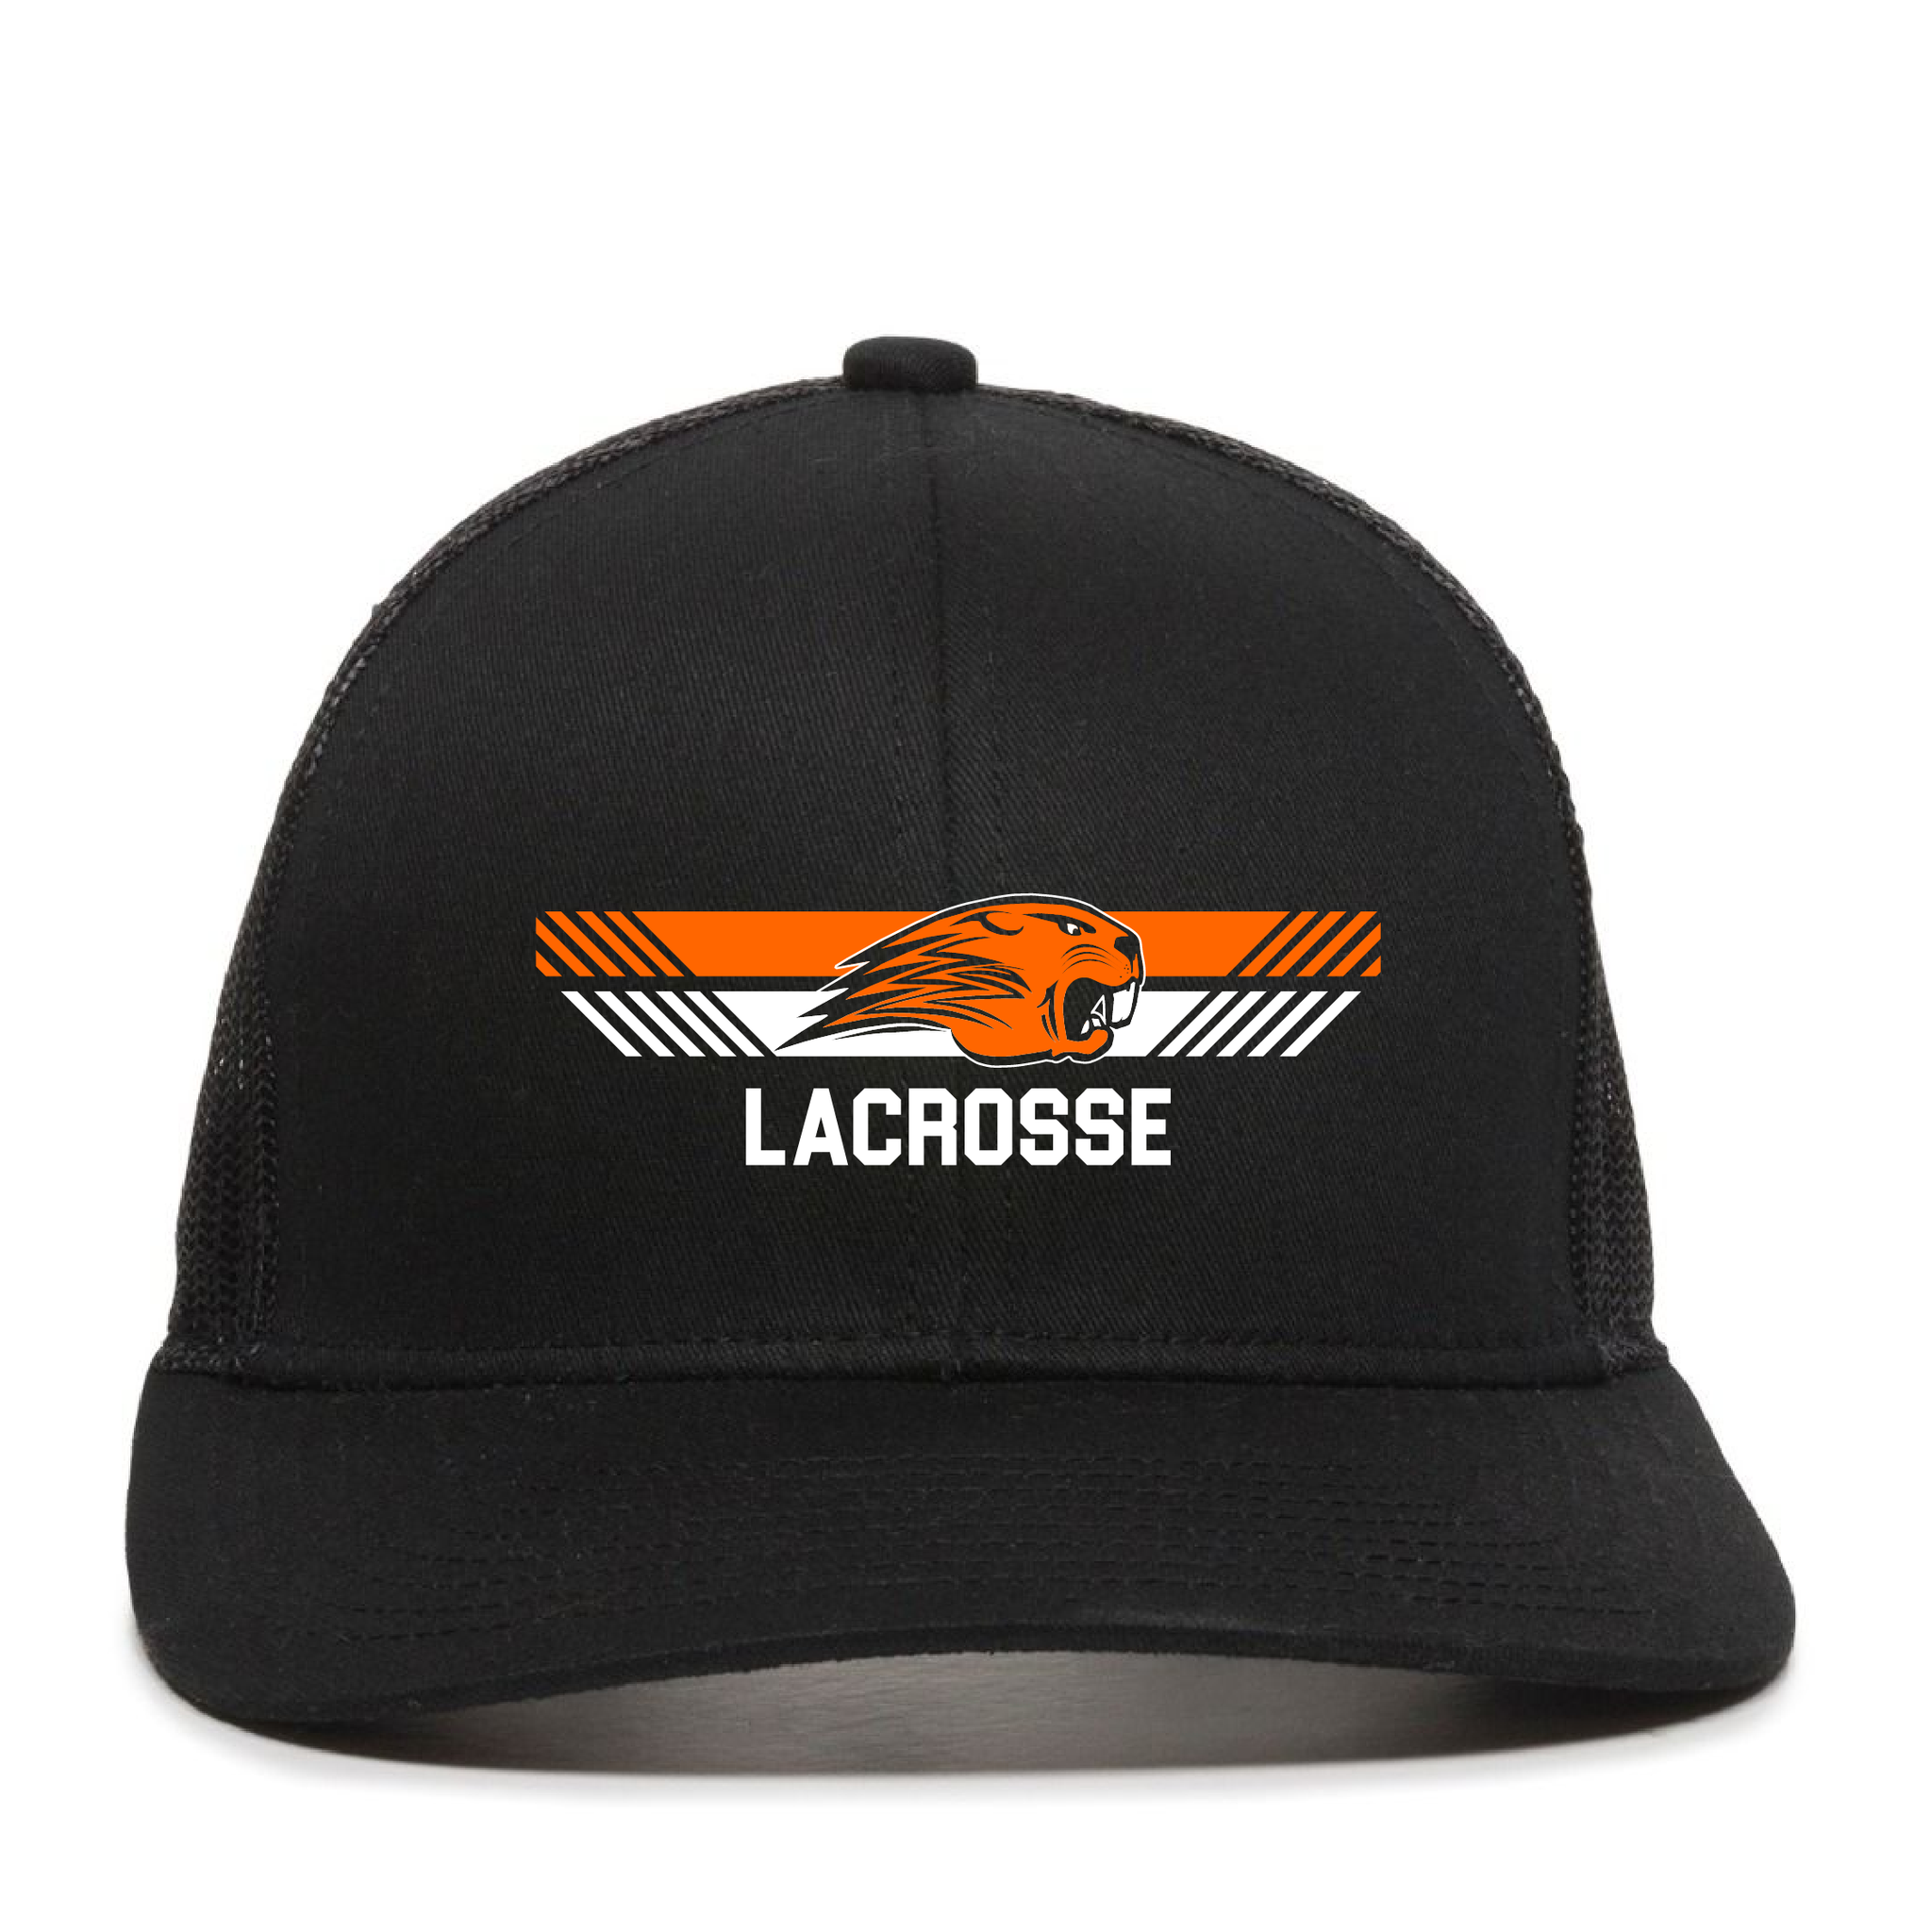 Beavercreek Lacrosse Twill Mesh Back Cap